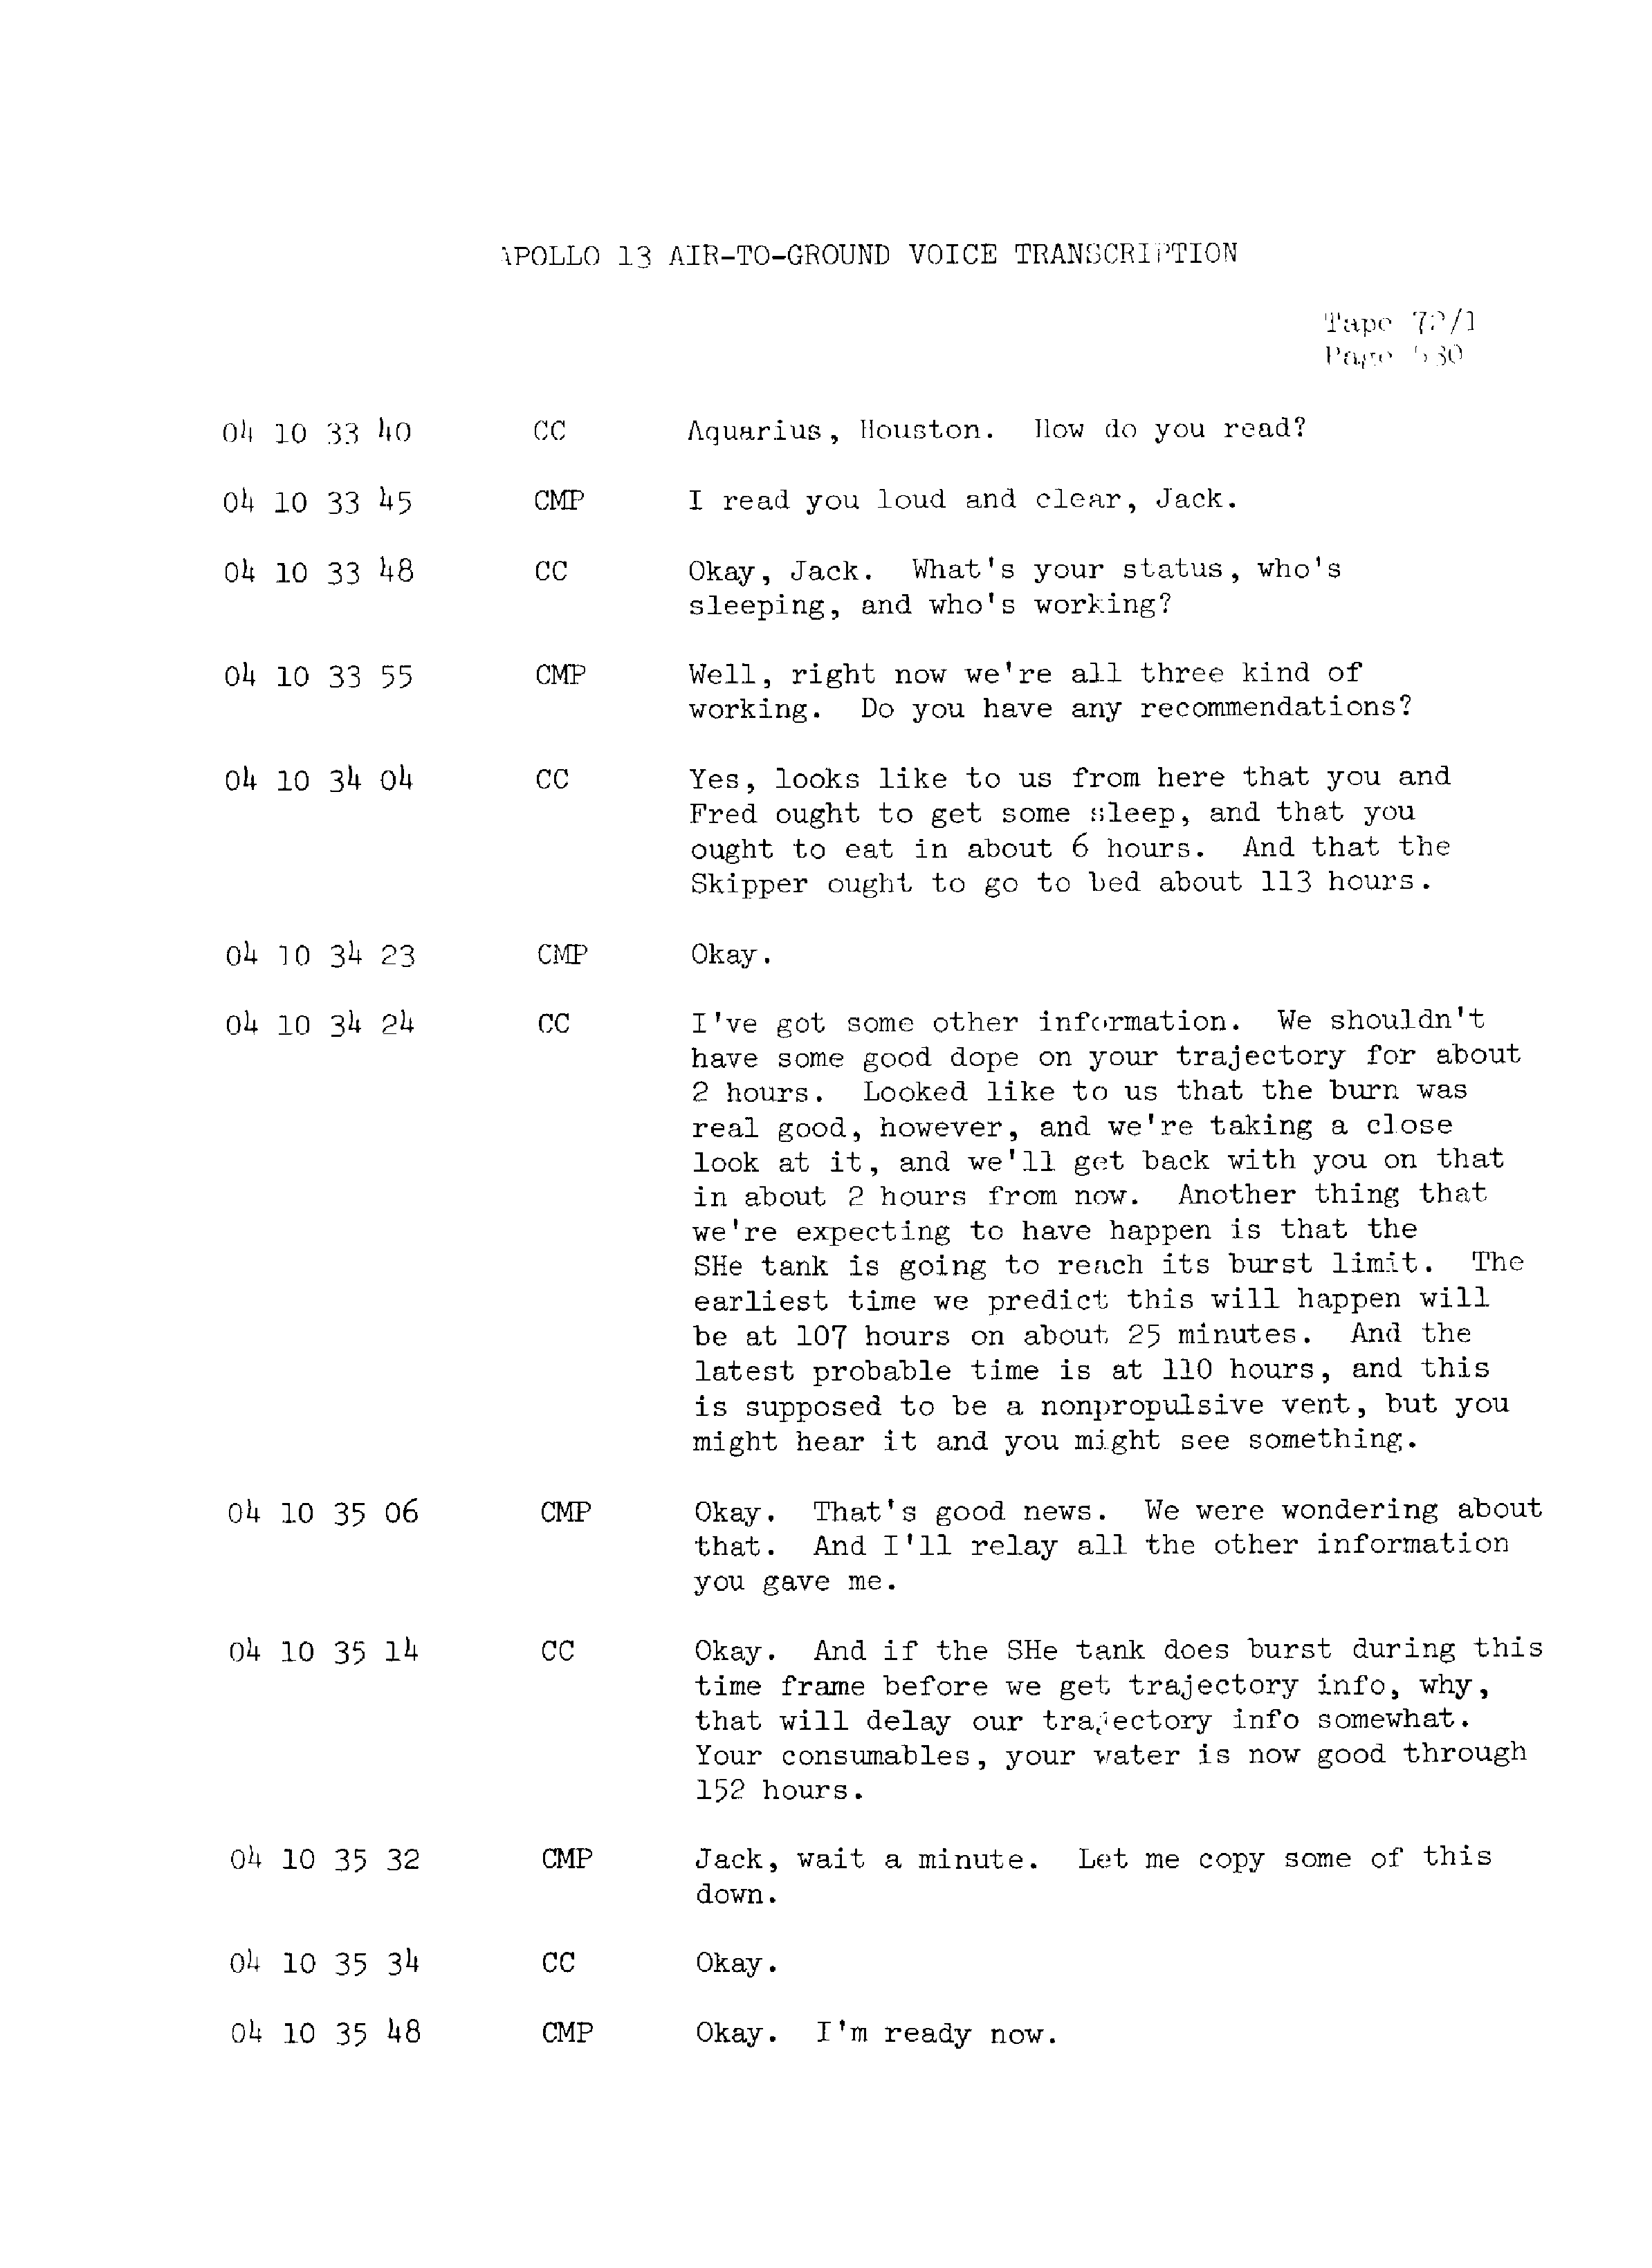 Page 537 of Apollo 13’s original transcript